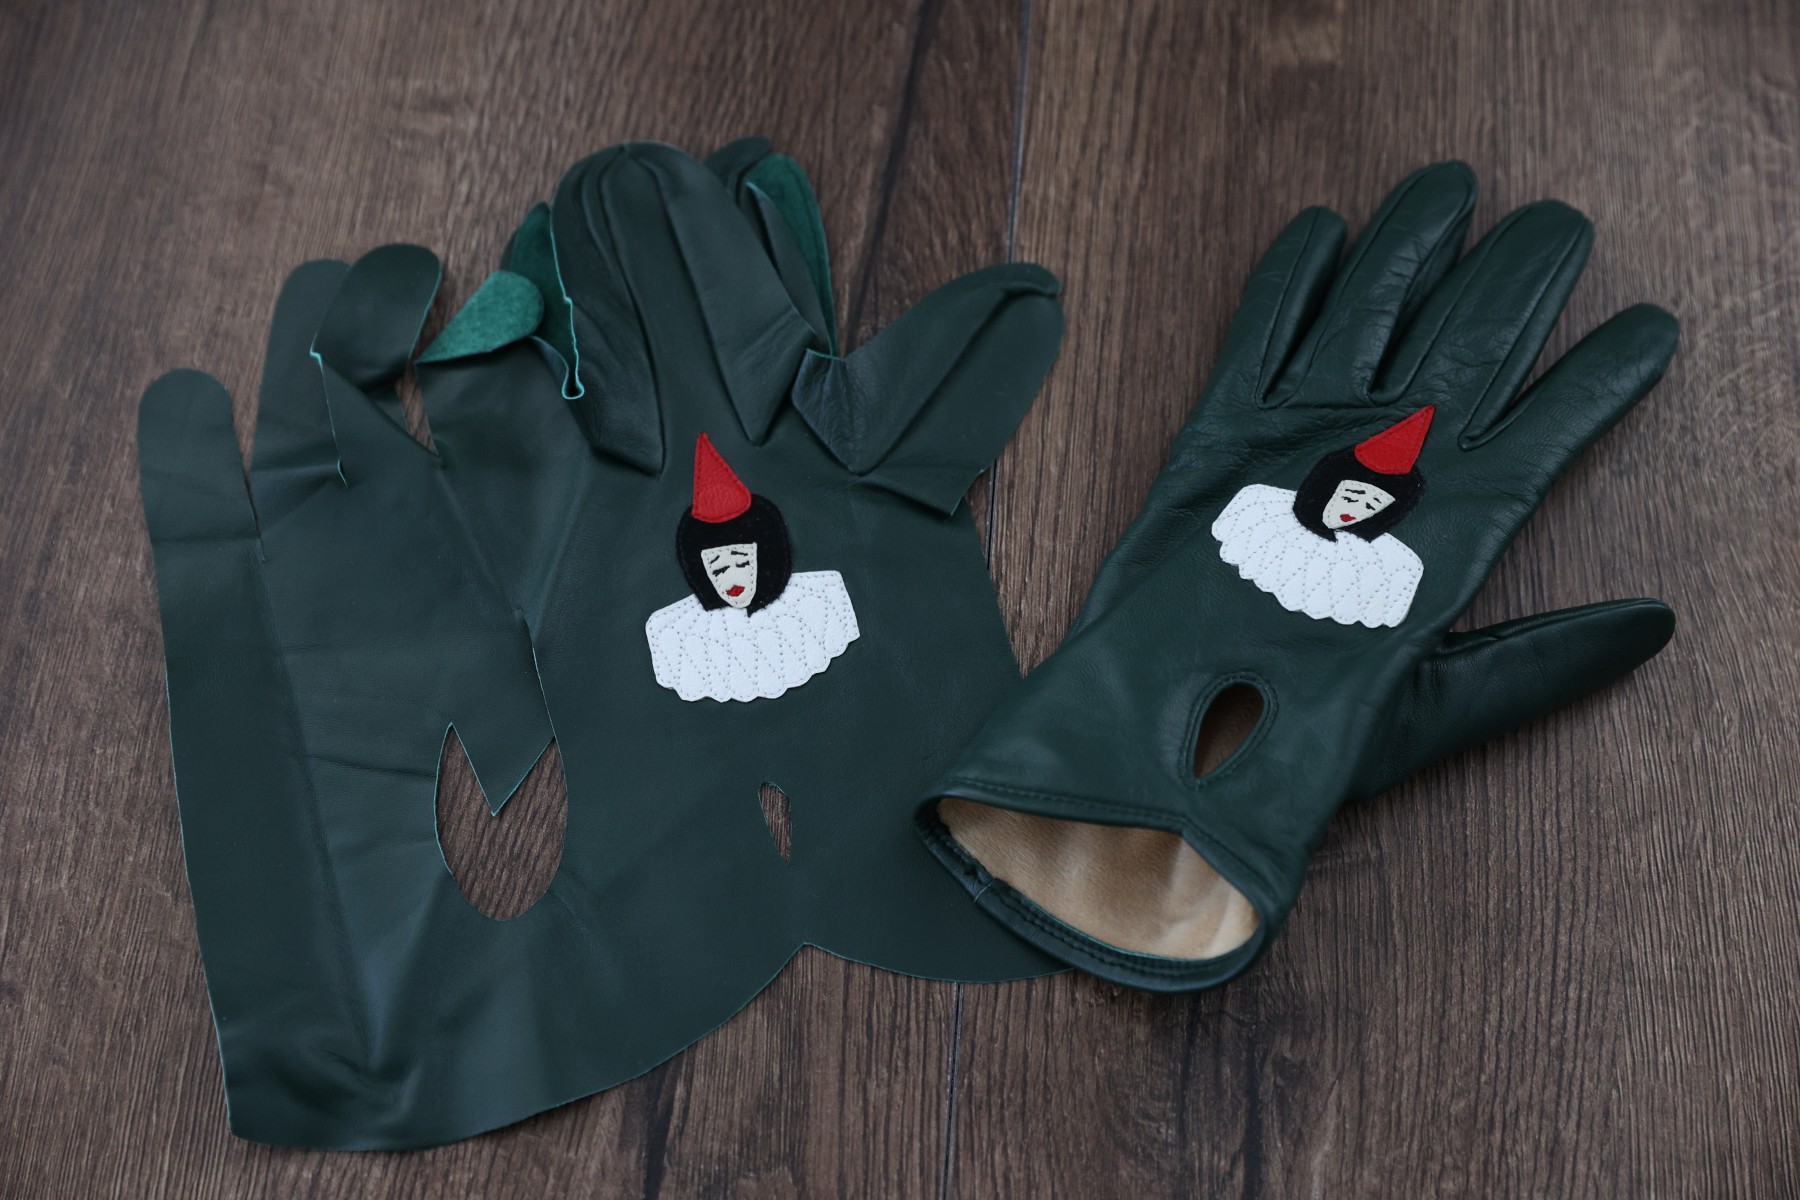 Эту пару перчаток дизайнер создает для себя. Фото Владимира Коцюбы-Белых